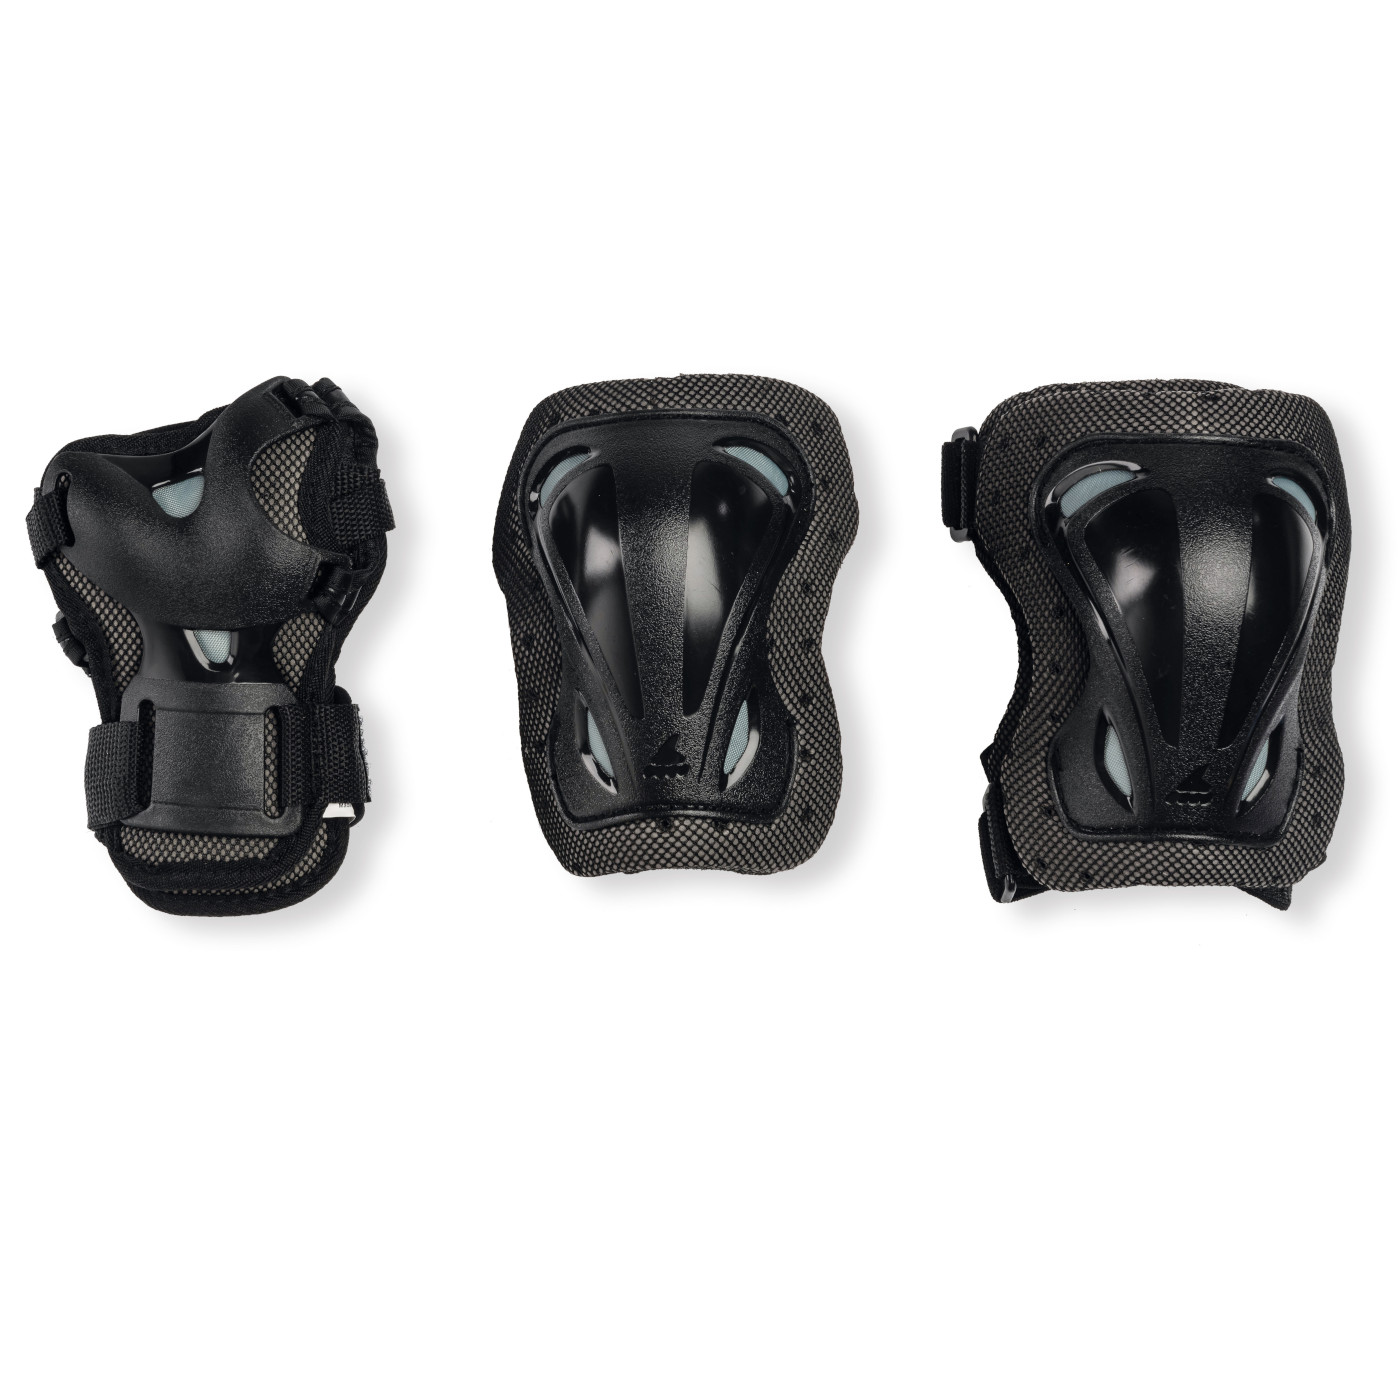 Produktbild von Rollerblade Skate Gear Junior 3 Pack - Protektoren Set - schwarz